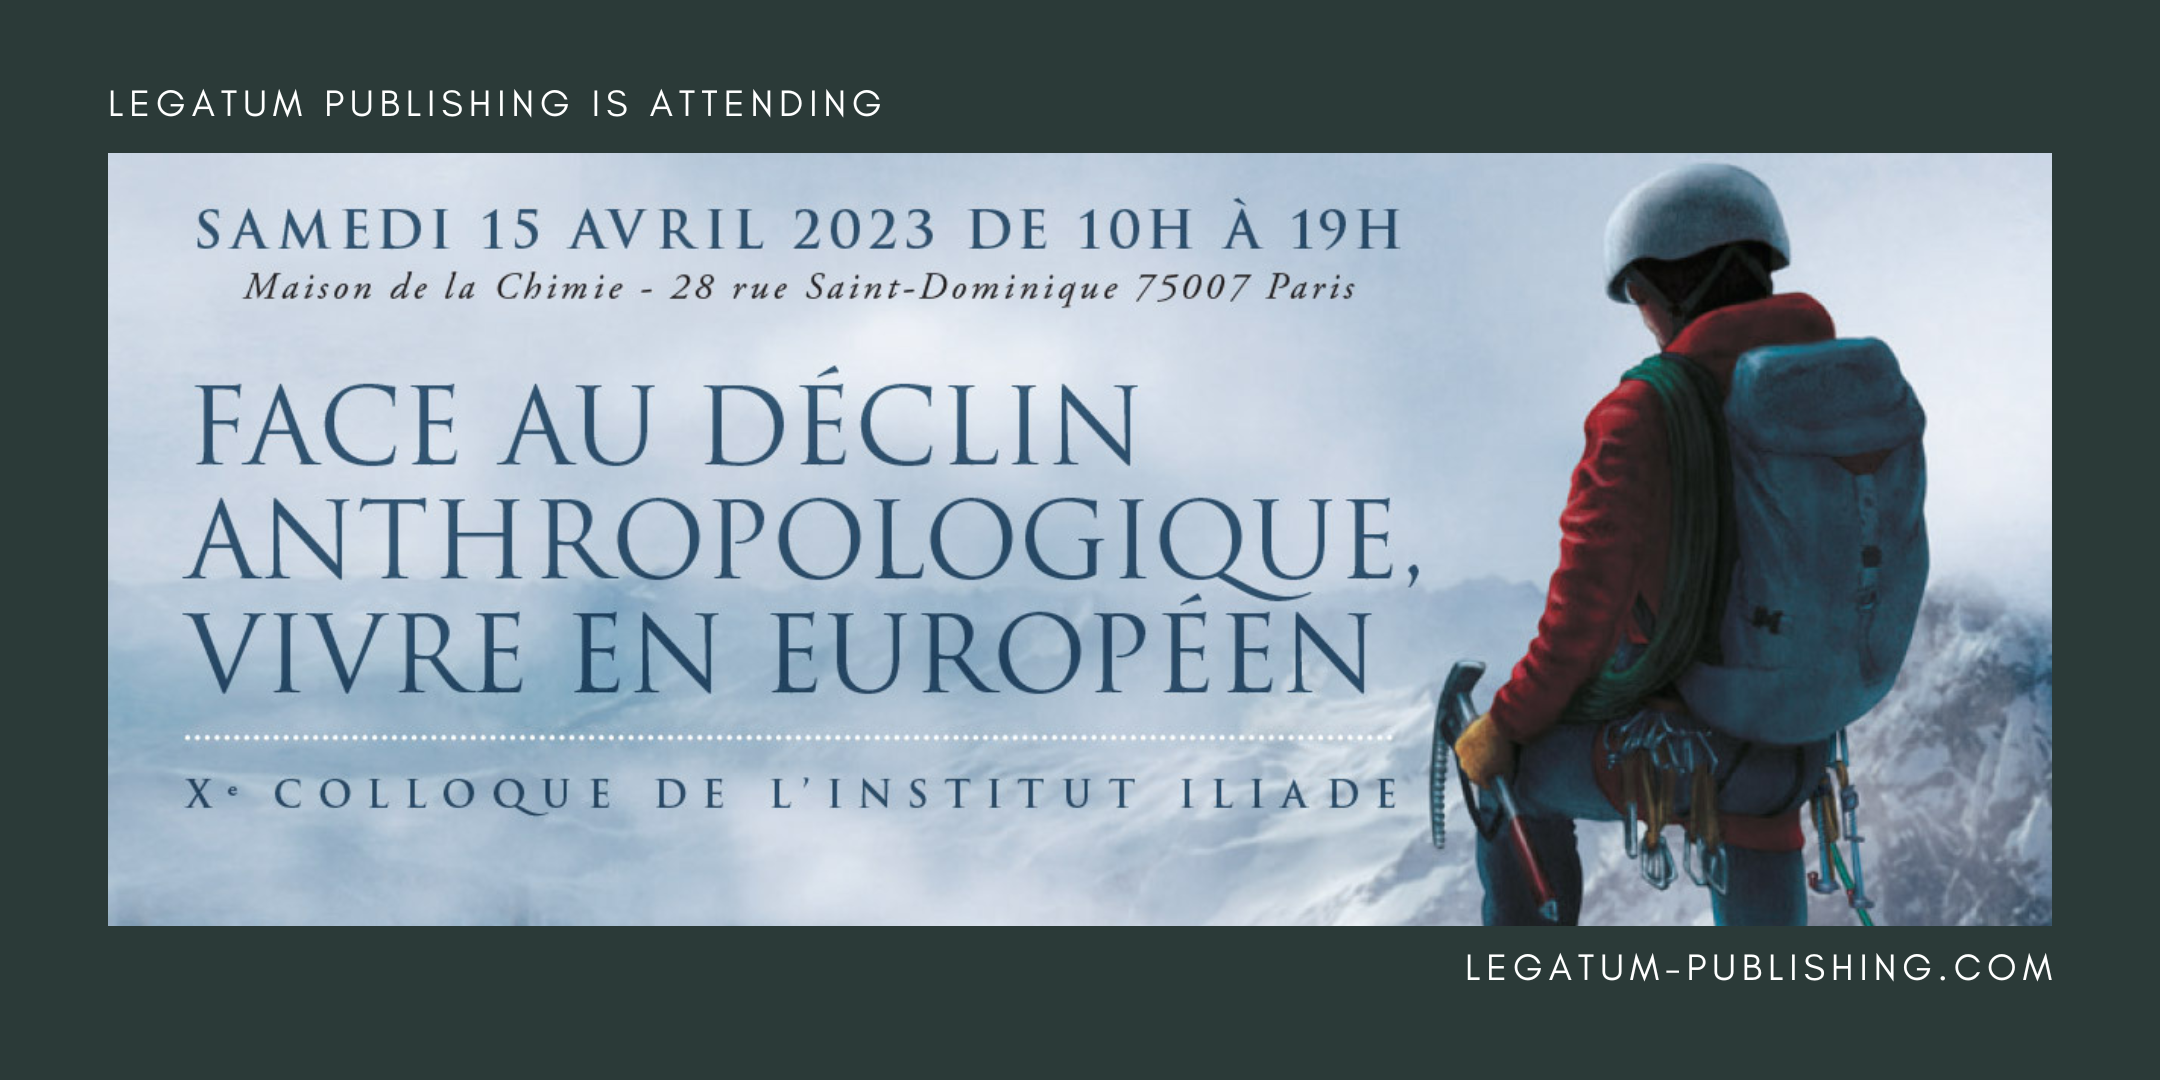 Legatum Publishing is attending the Institut ILIADE colloquium in Paris